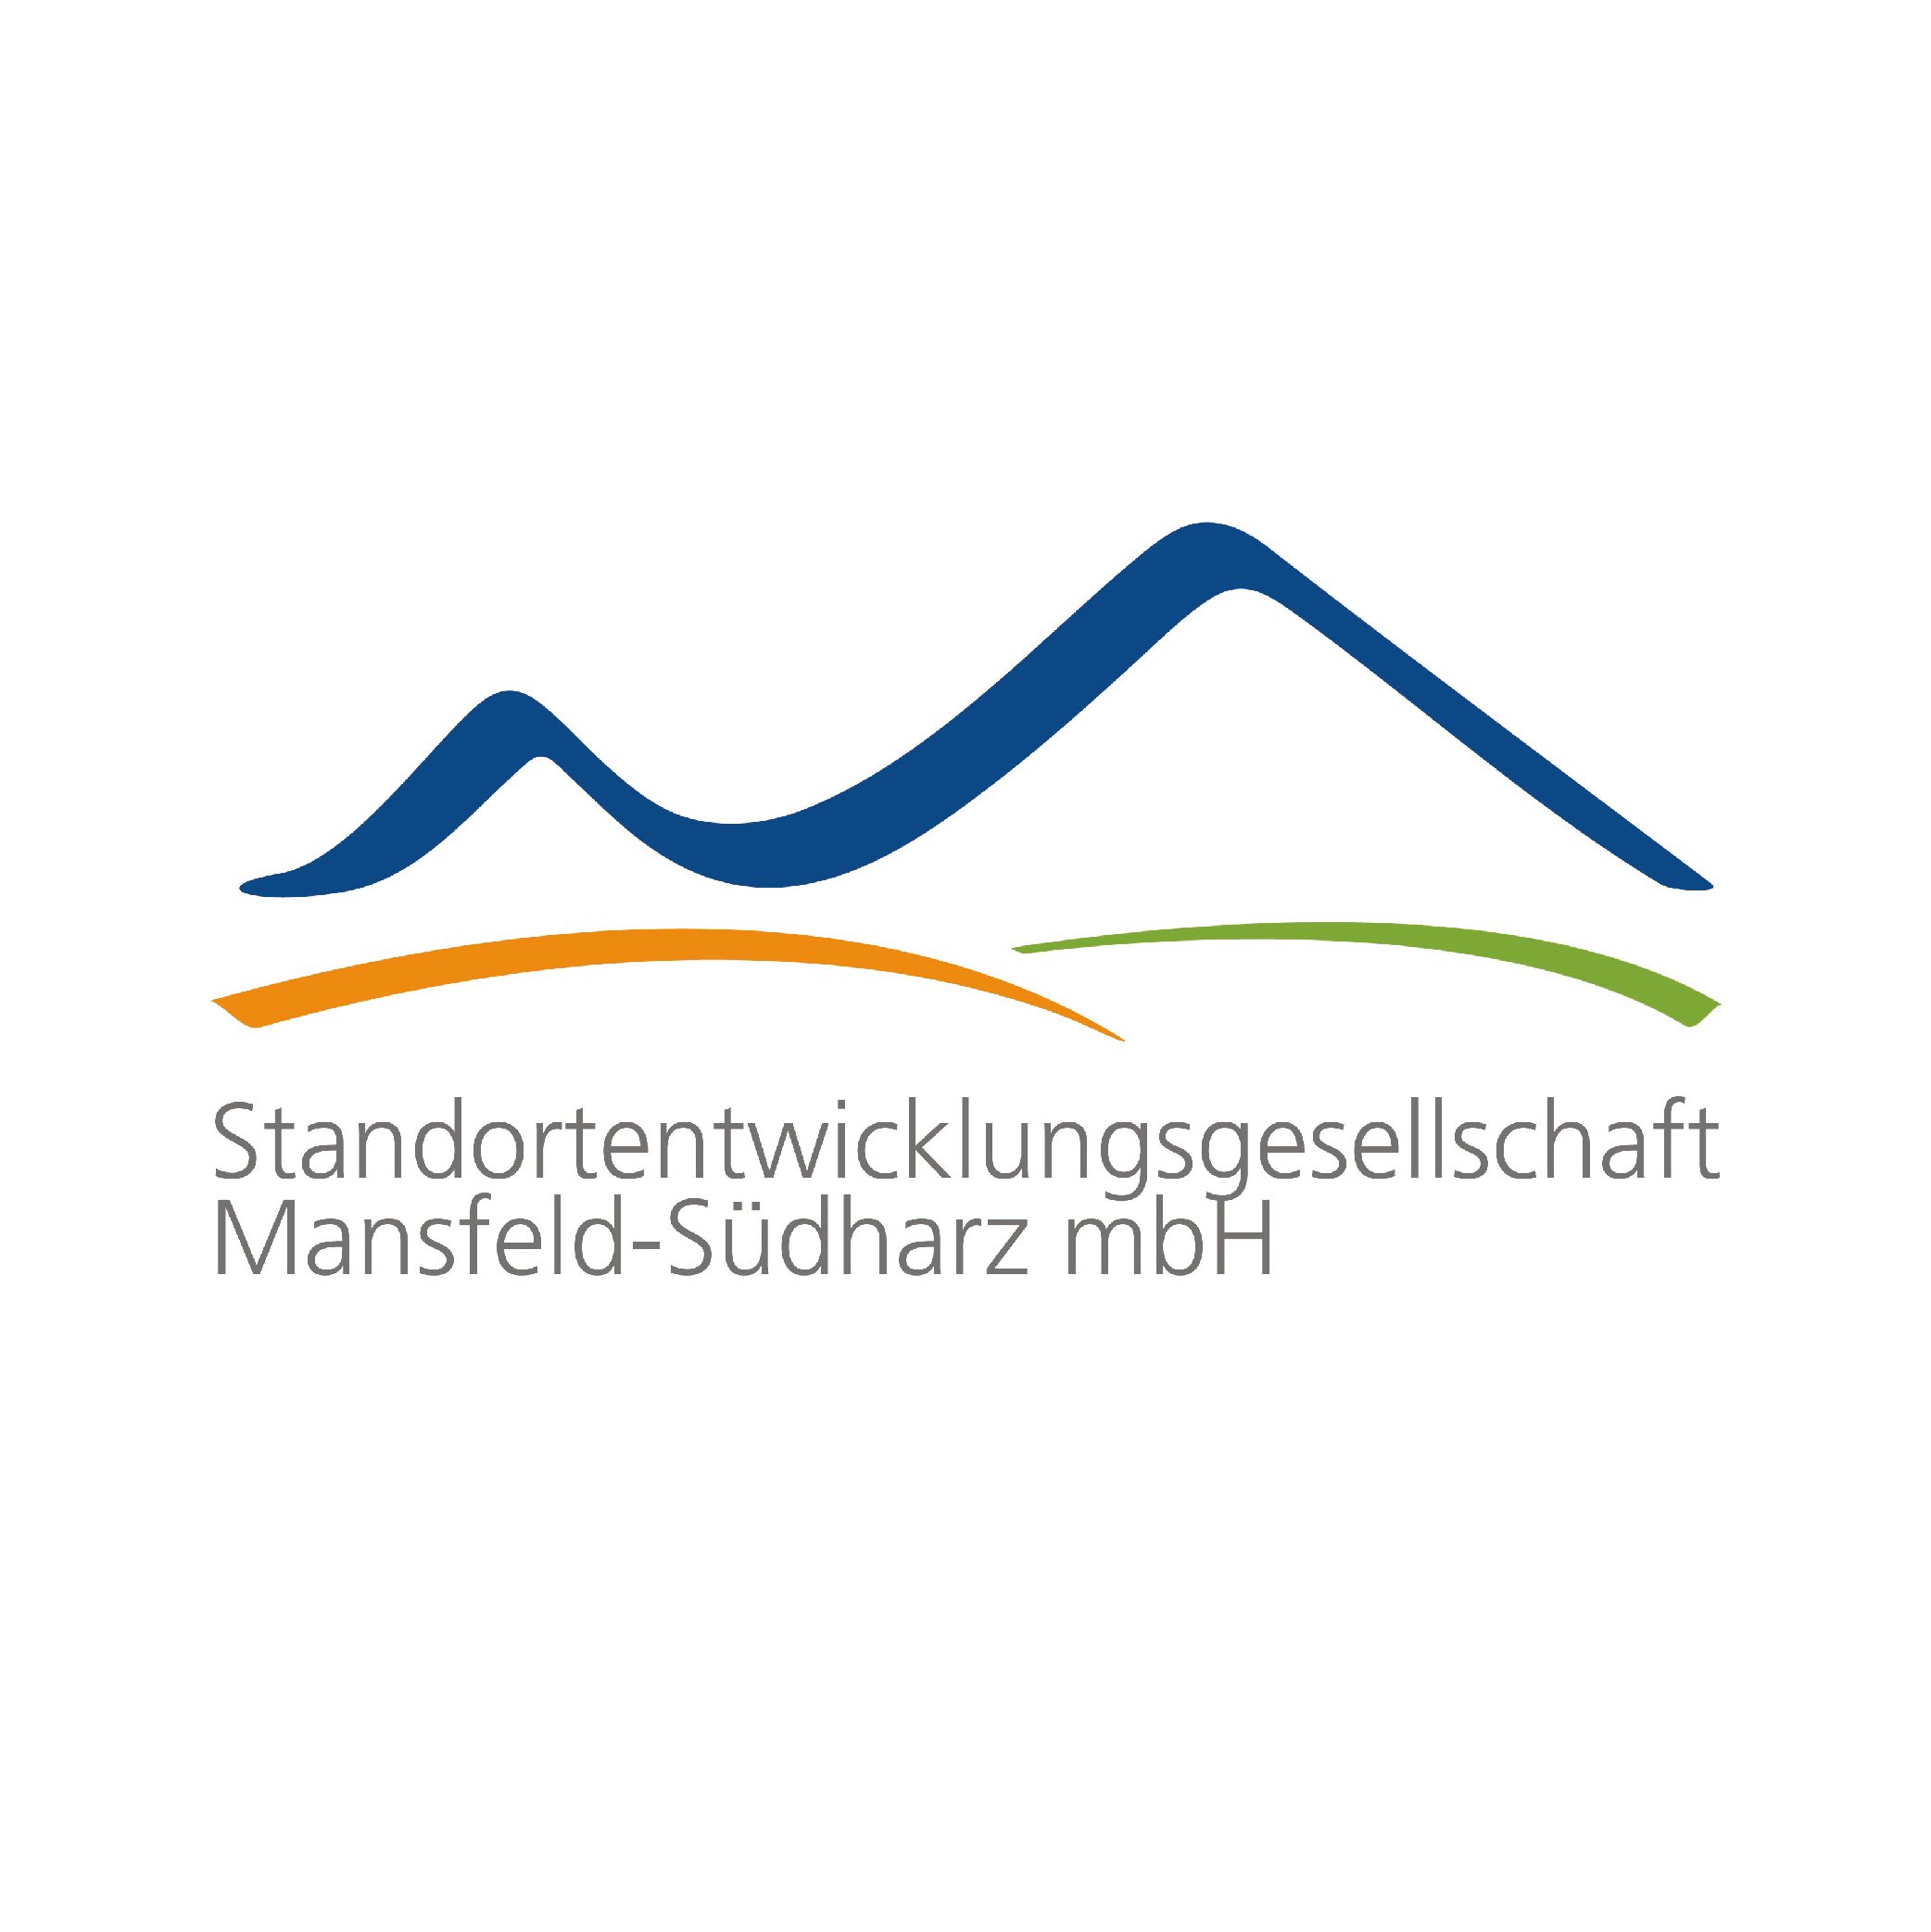 Standortentwicklungsgesellschaft Mansfeld-Südharz mbh